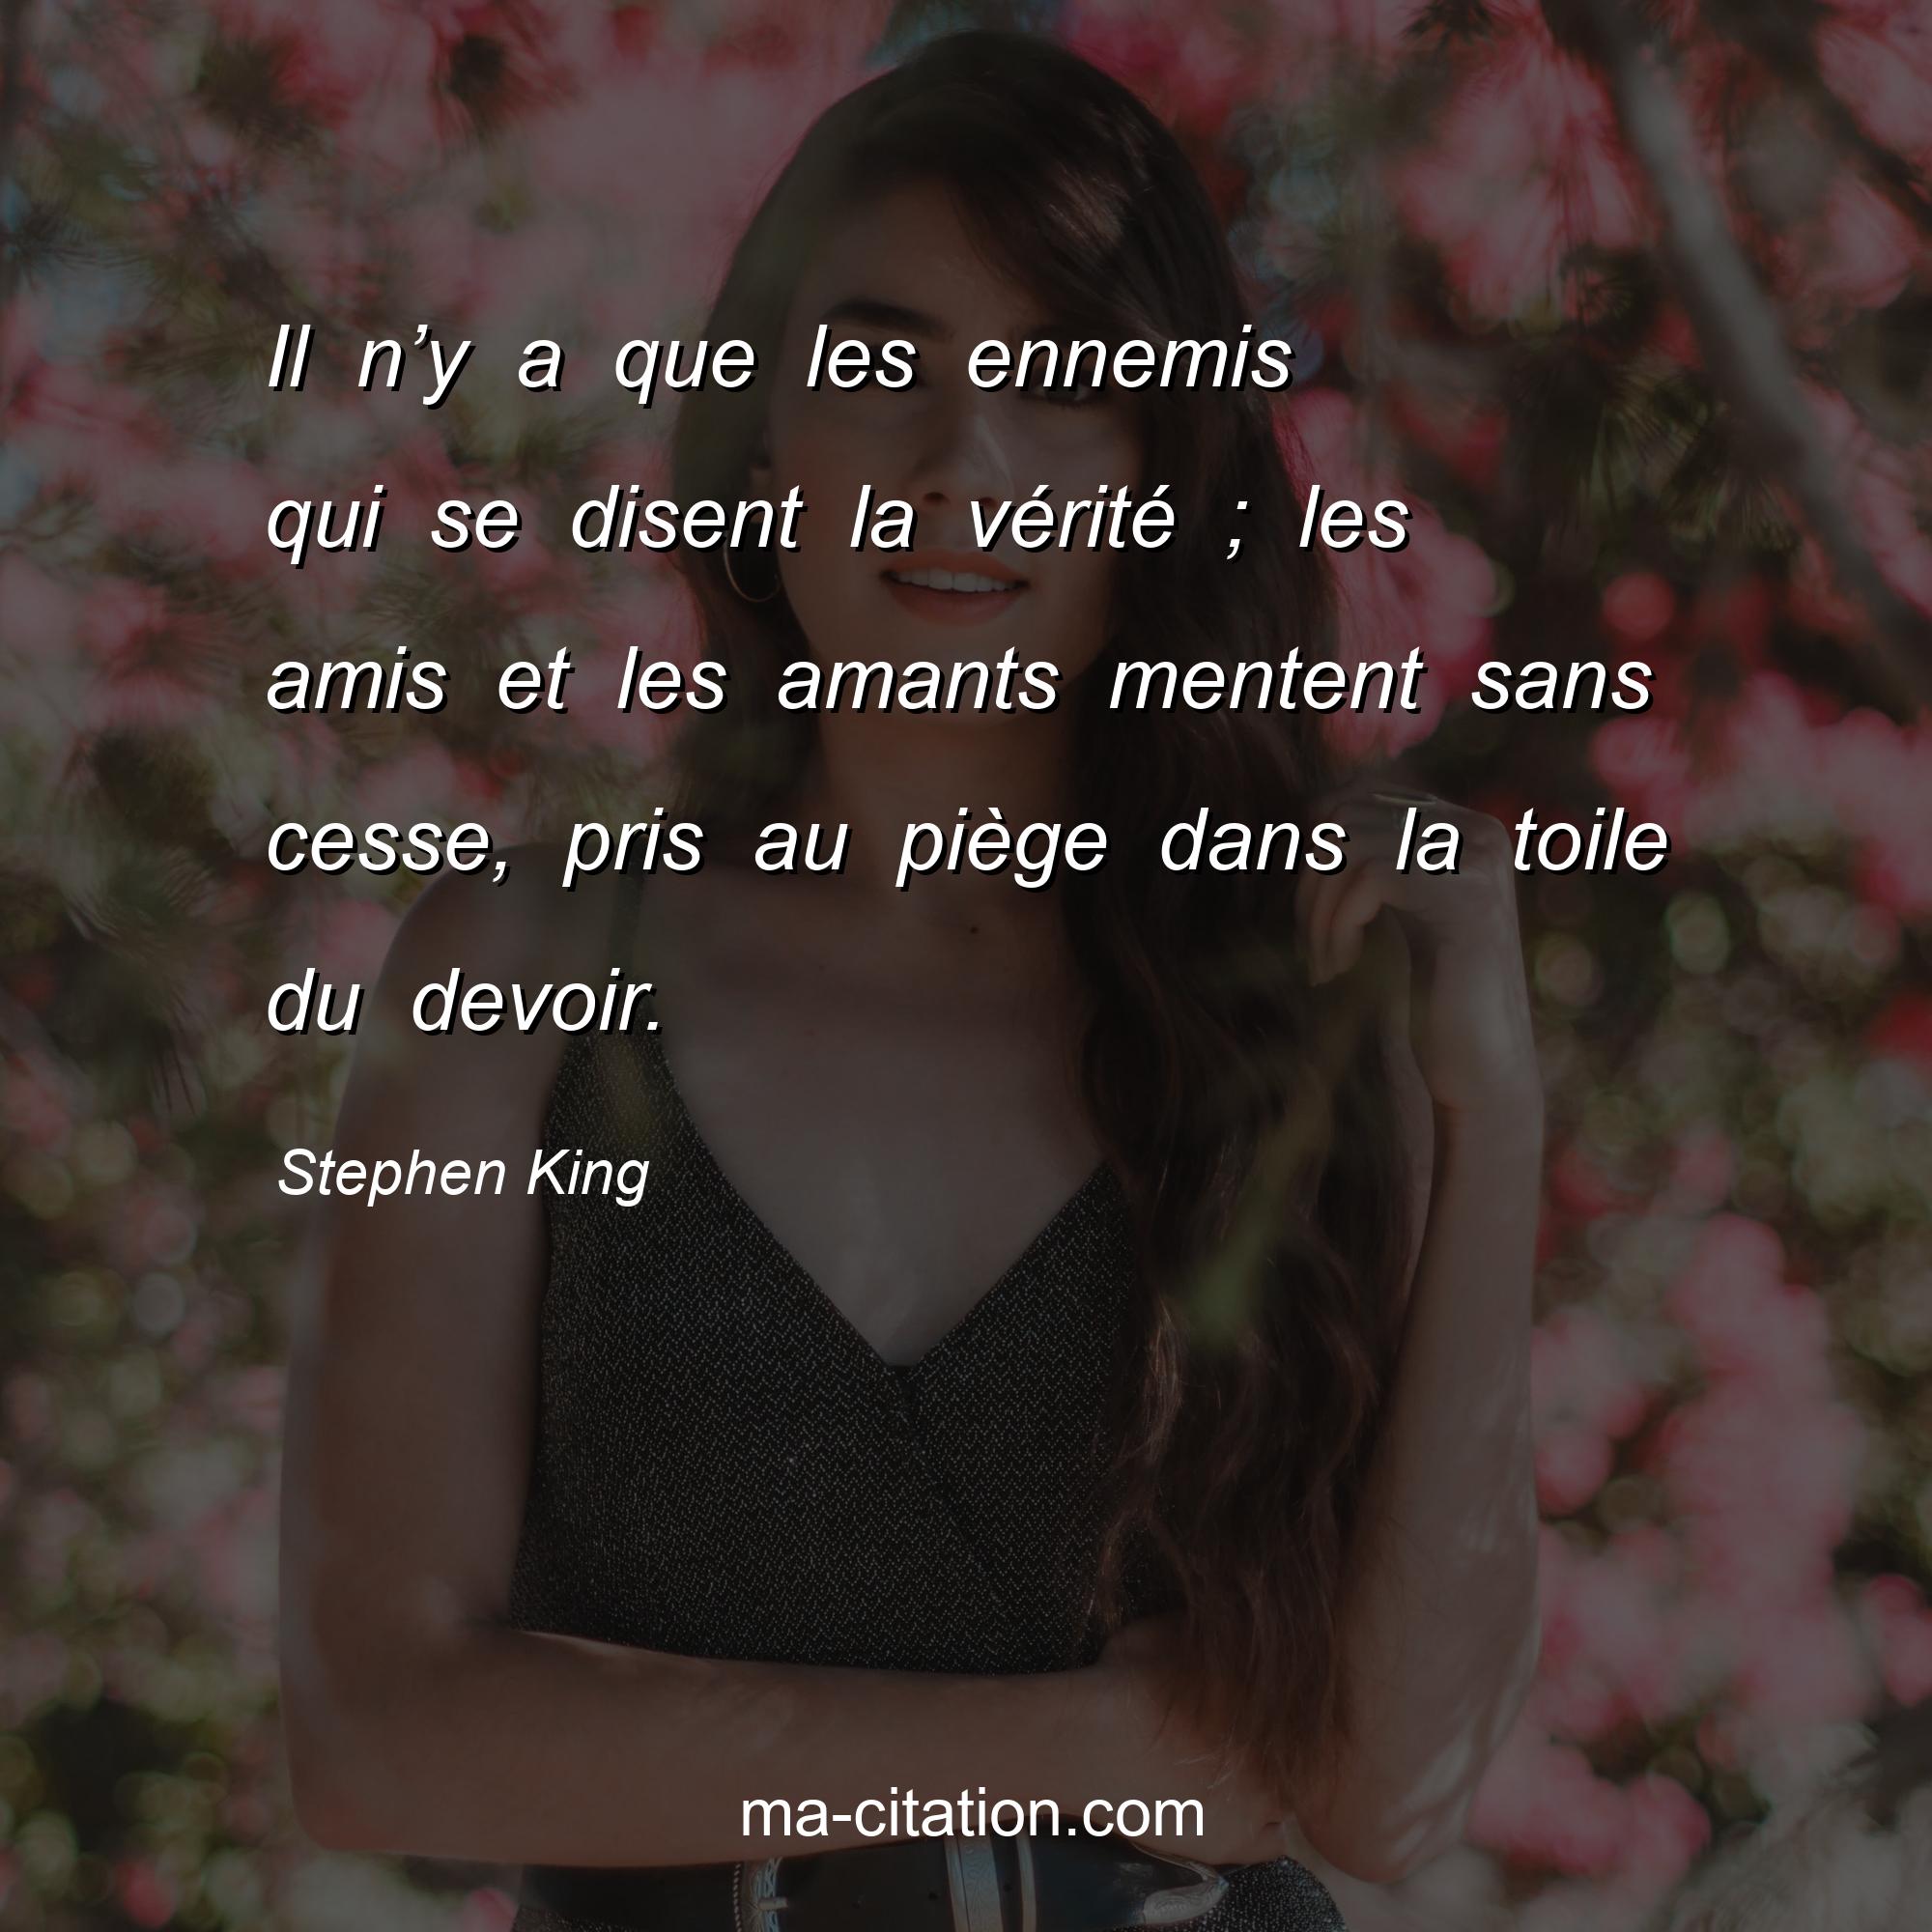 Stephen King : Il n’y a que les ennemis qui se disent la vérité ; les amis et les amants mentent sans cesse, pris au piège dans la toile du devoir.